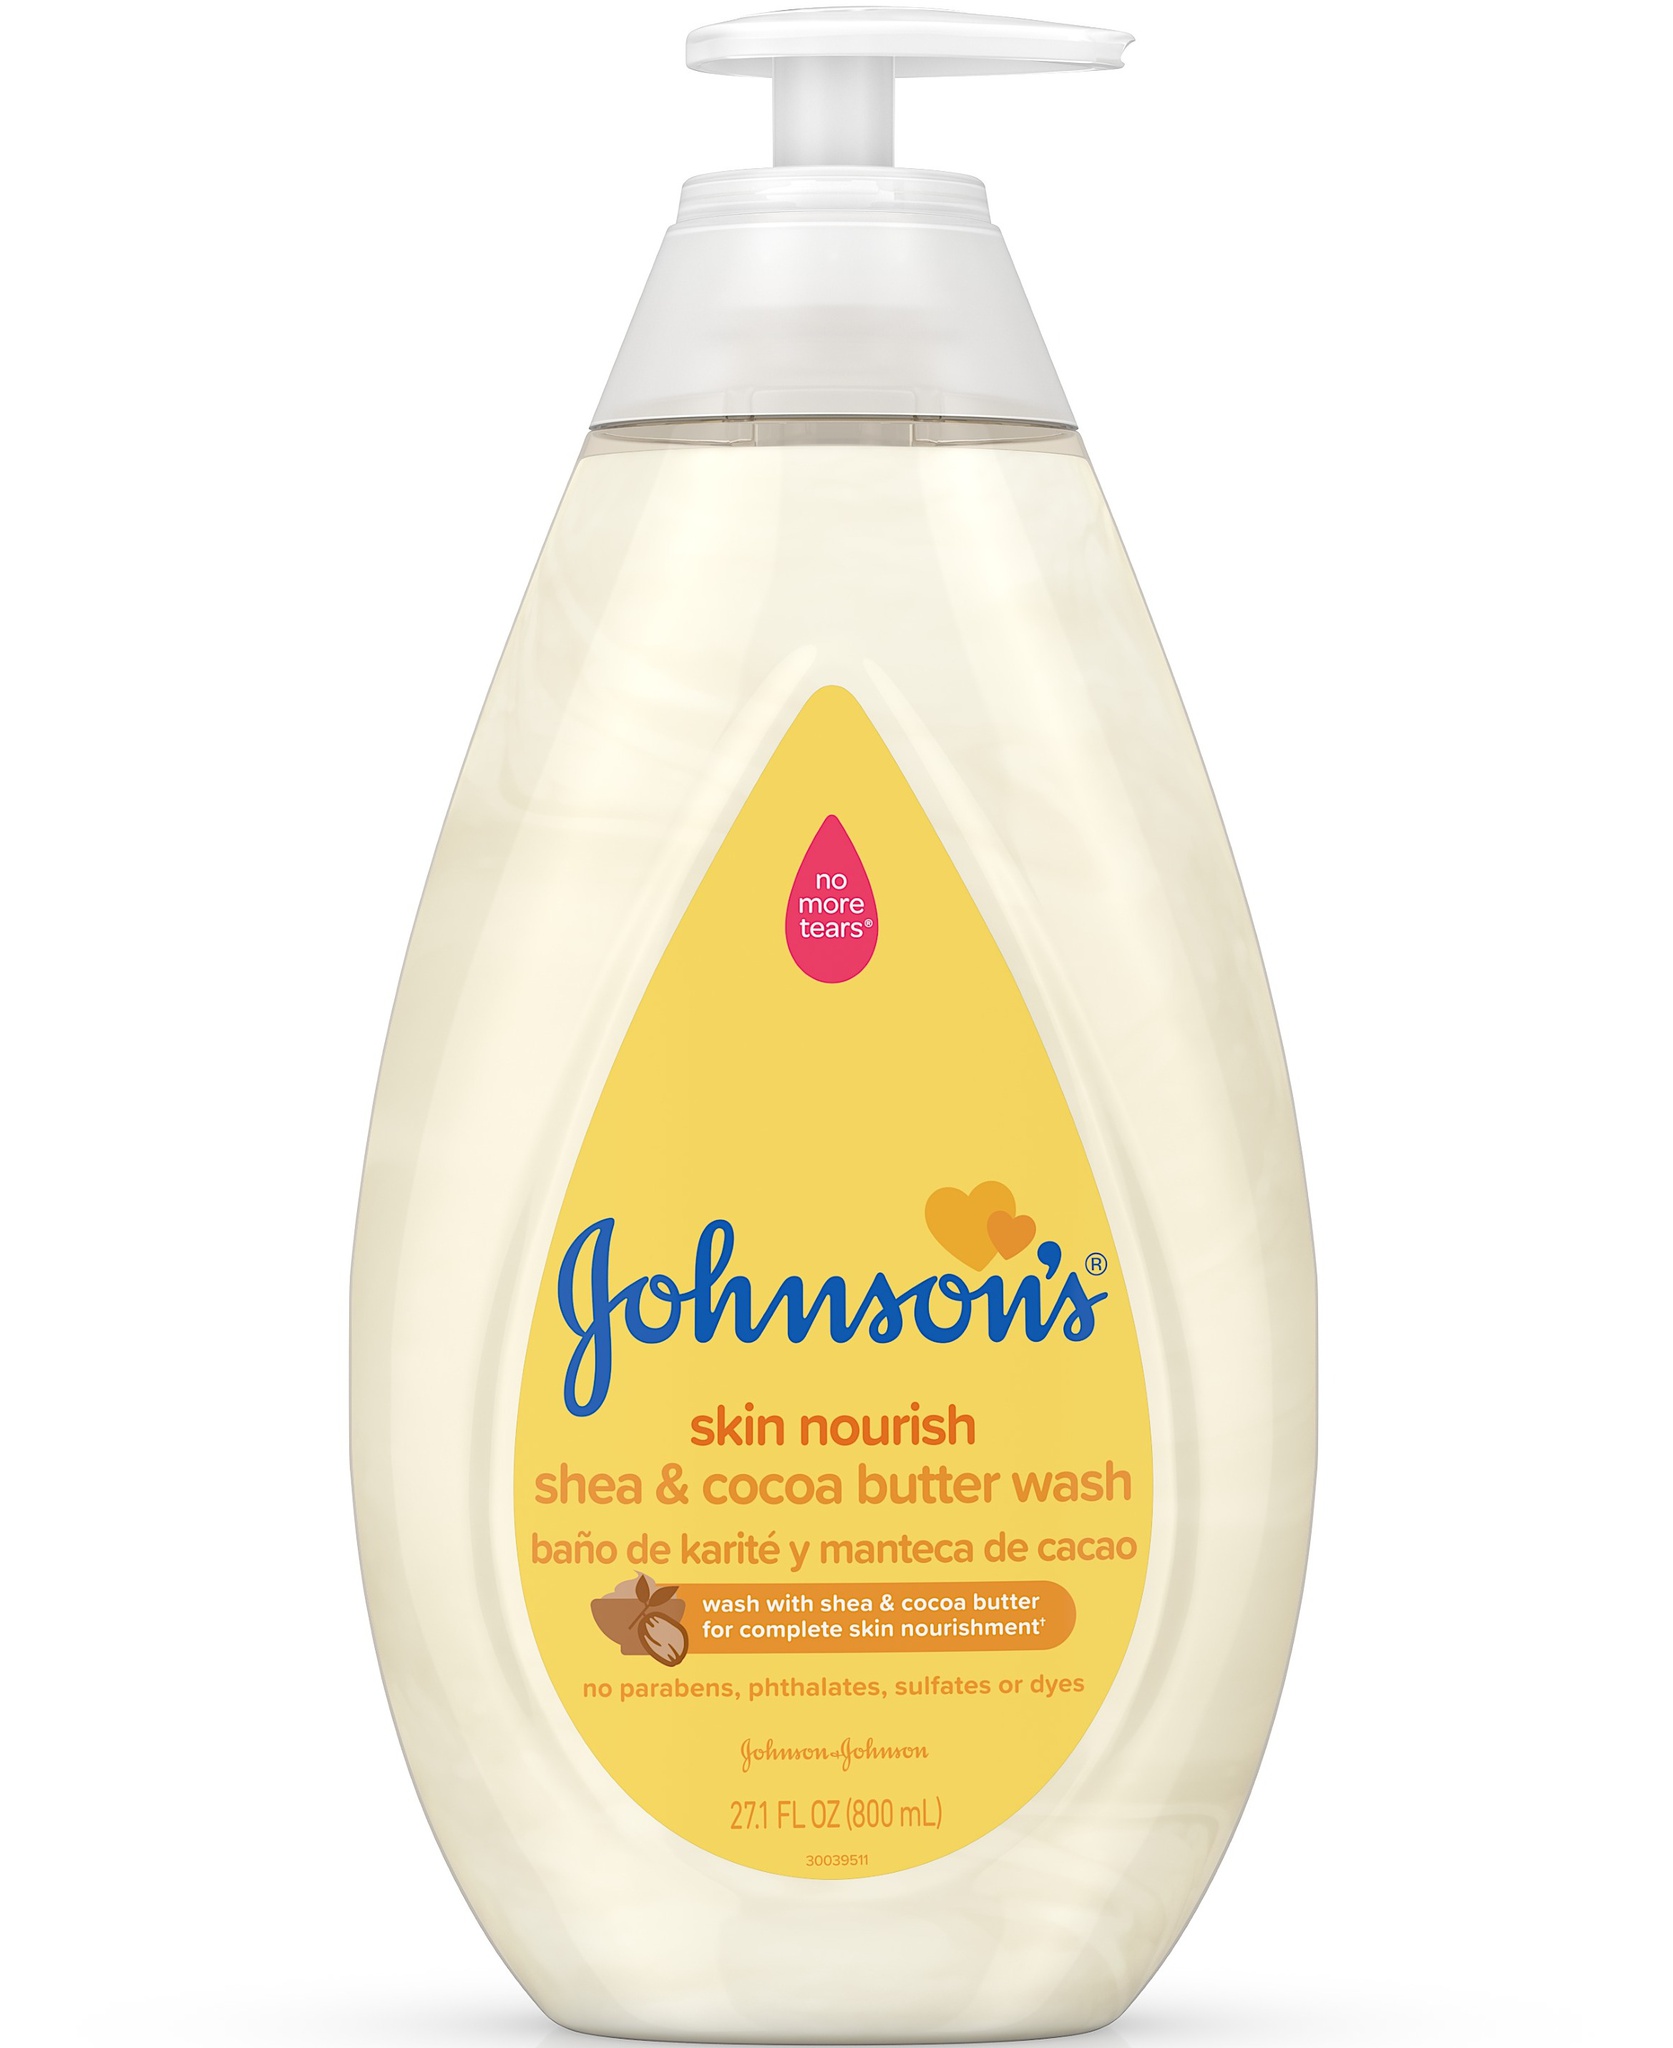 Johnson's Skin Nourish Moisture Wash, Shea & Cocoa Butter